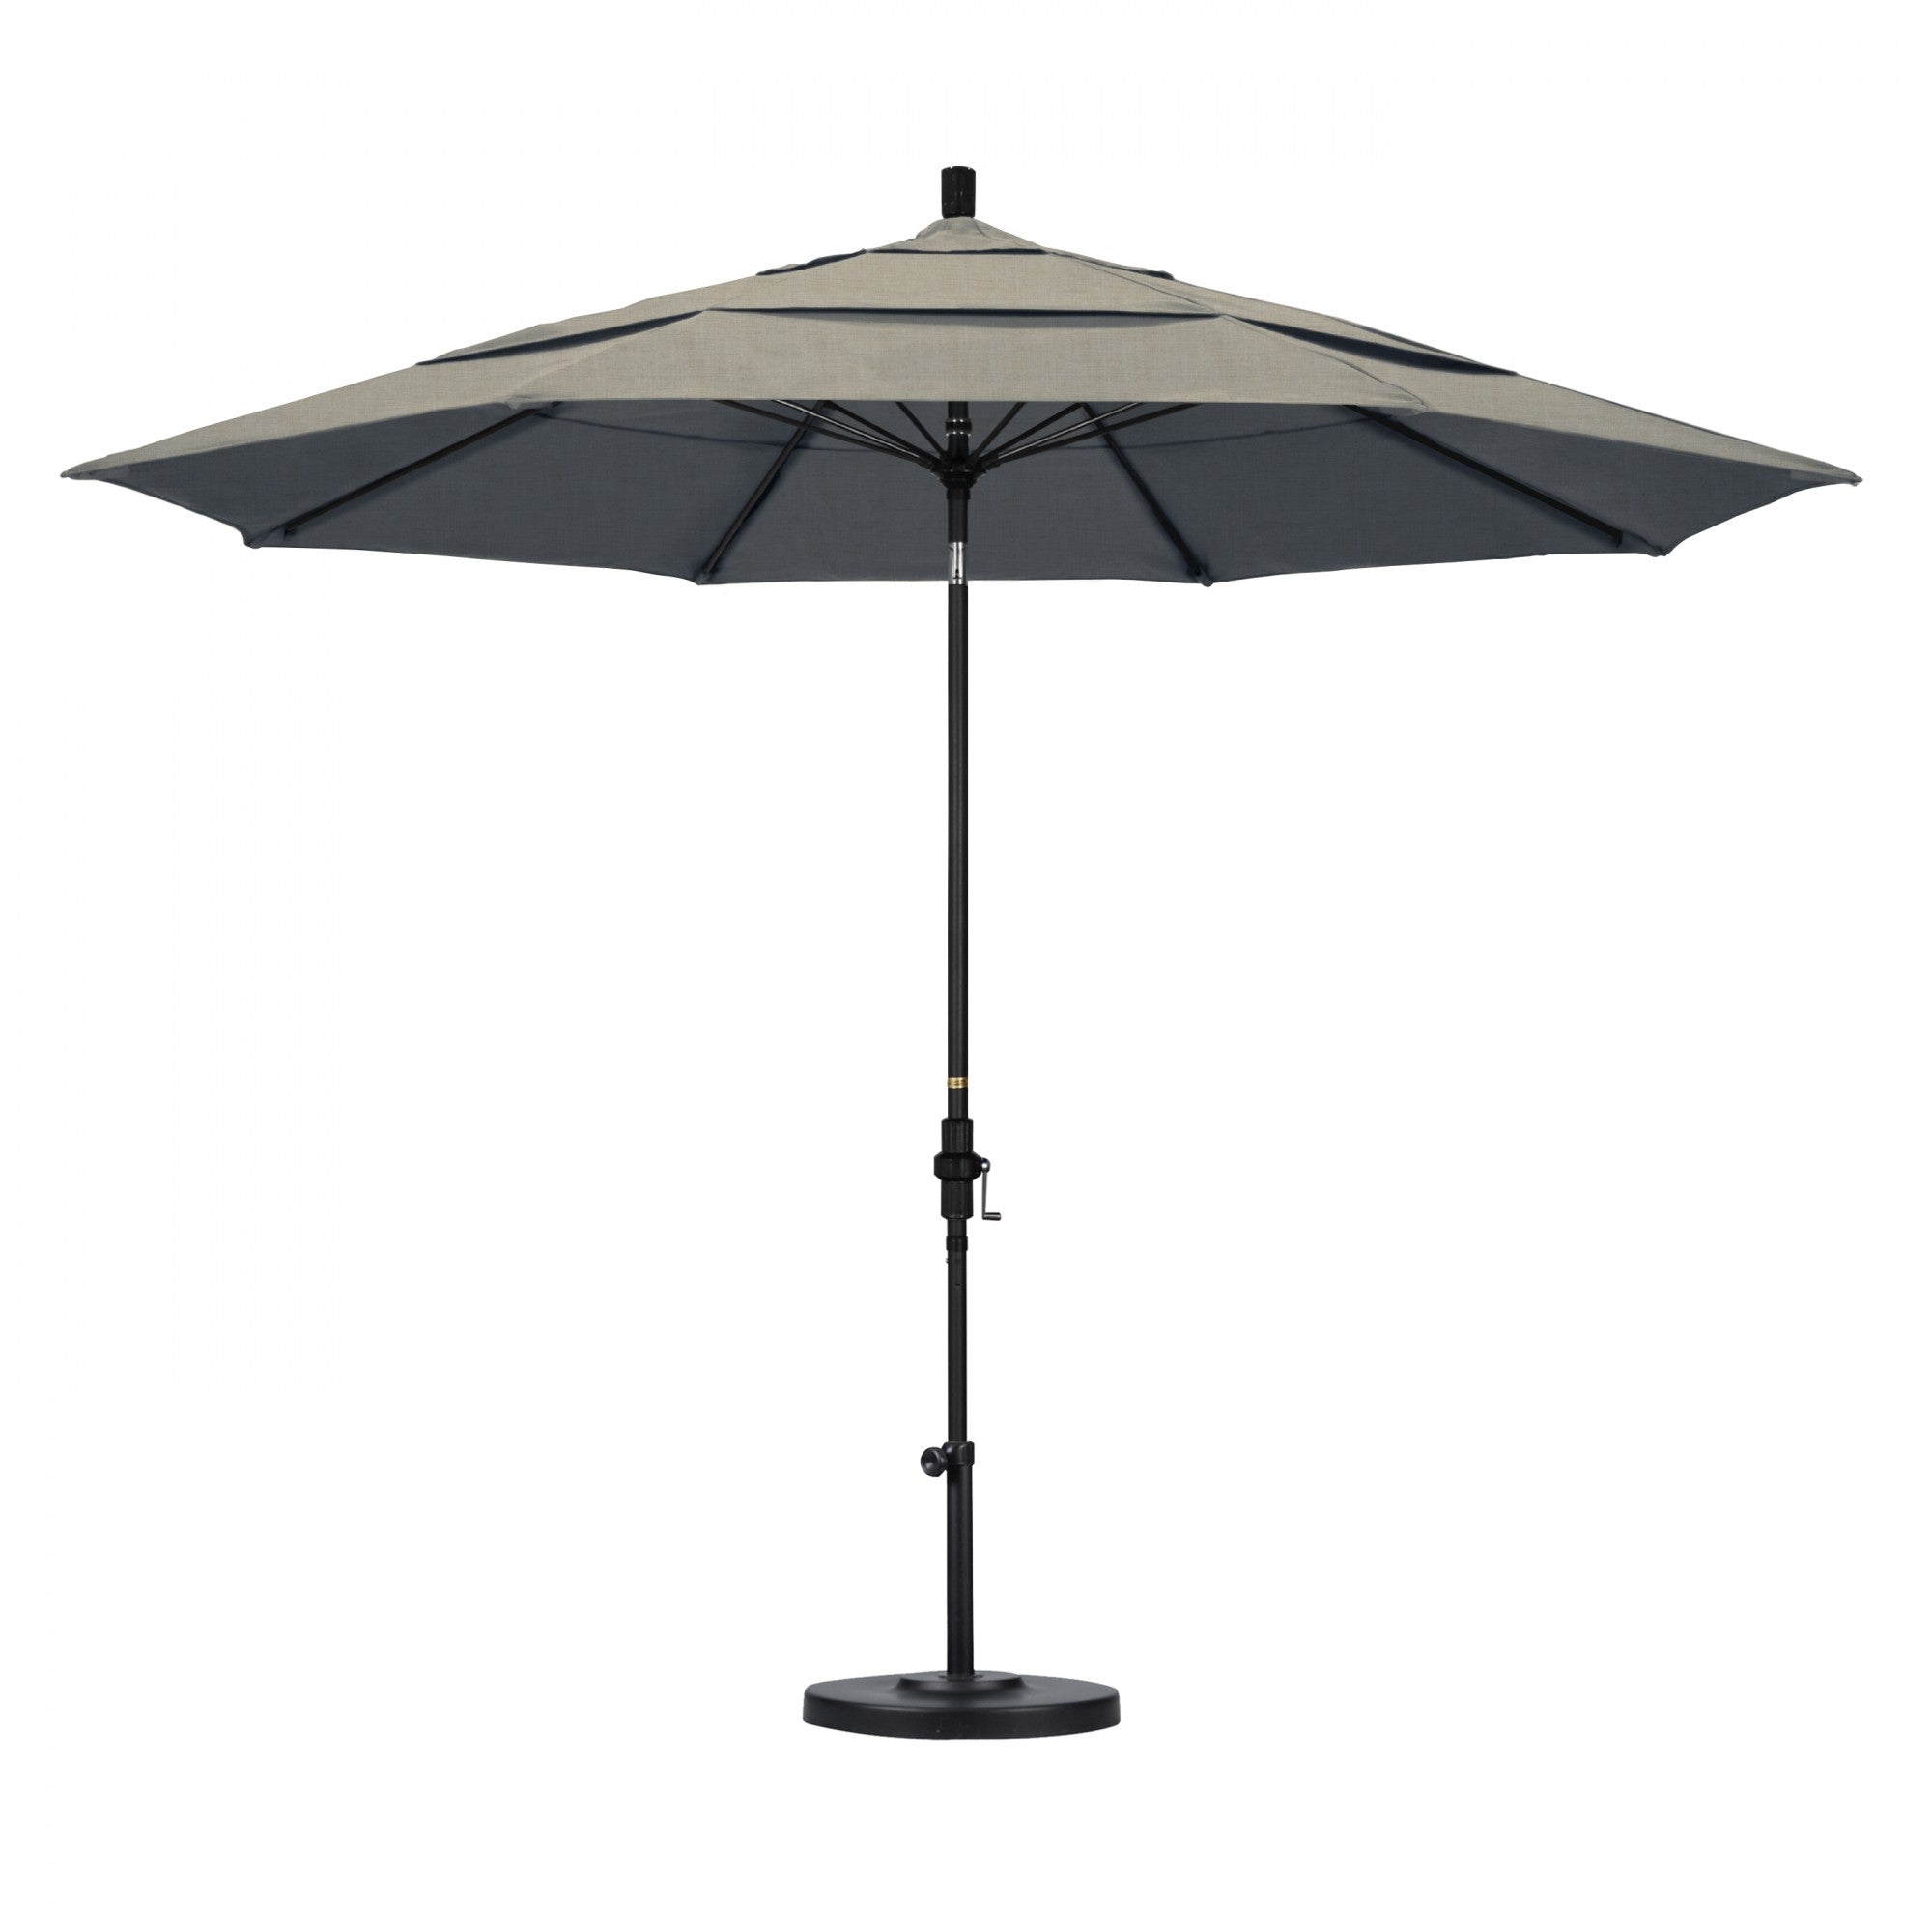 California Umbrella - 11' - Patio Umbrella Umbrella - Aluminum Pole - Spectrum Dove - Sunbrella  - GSCUF118705-48032-DWV